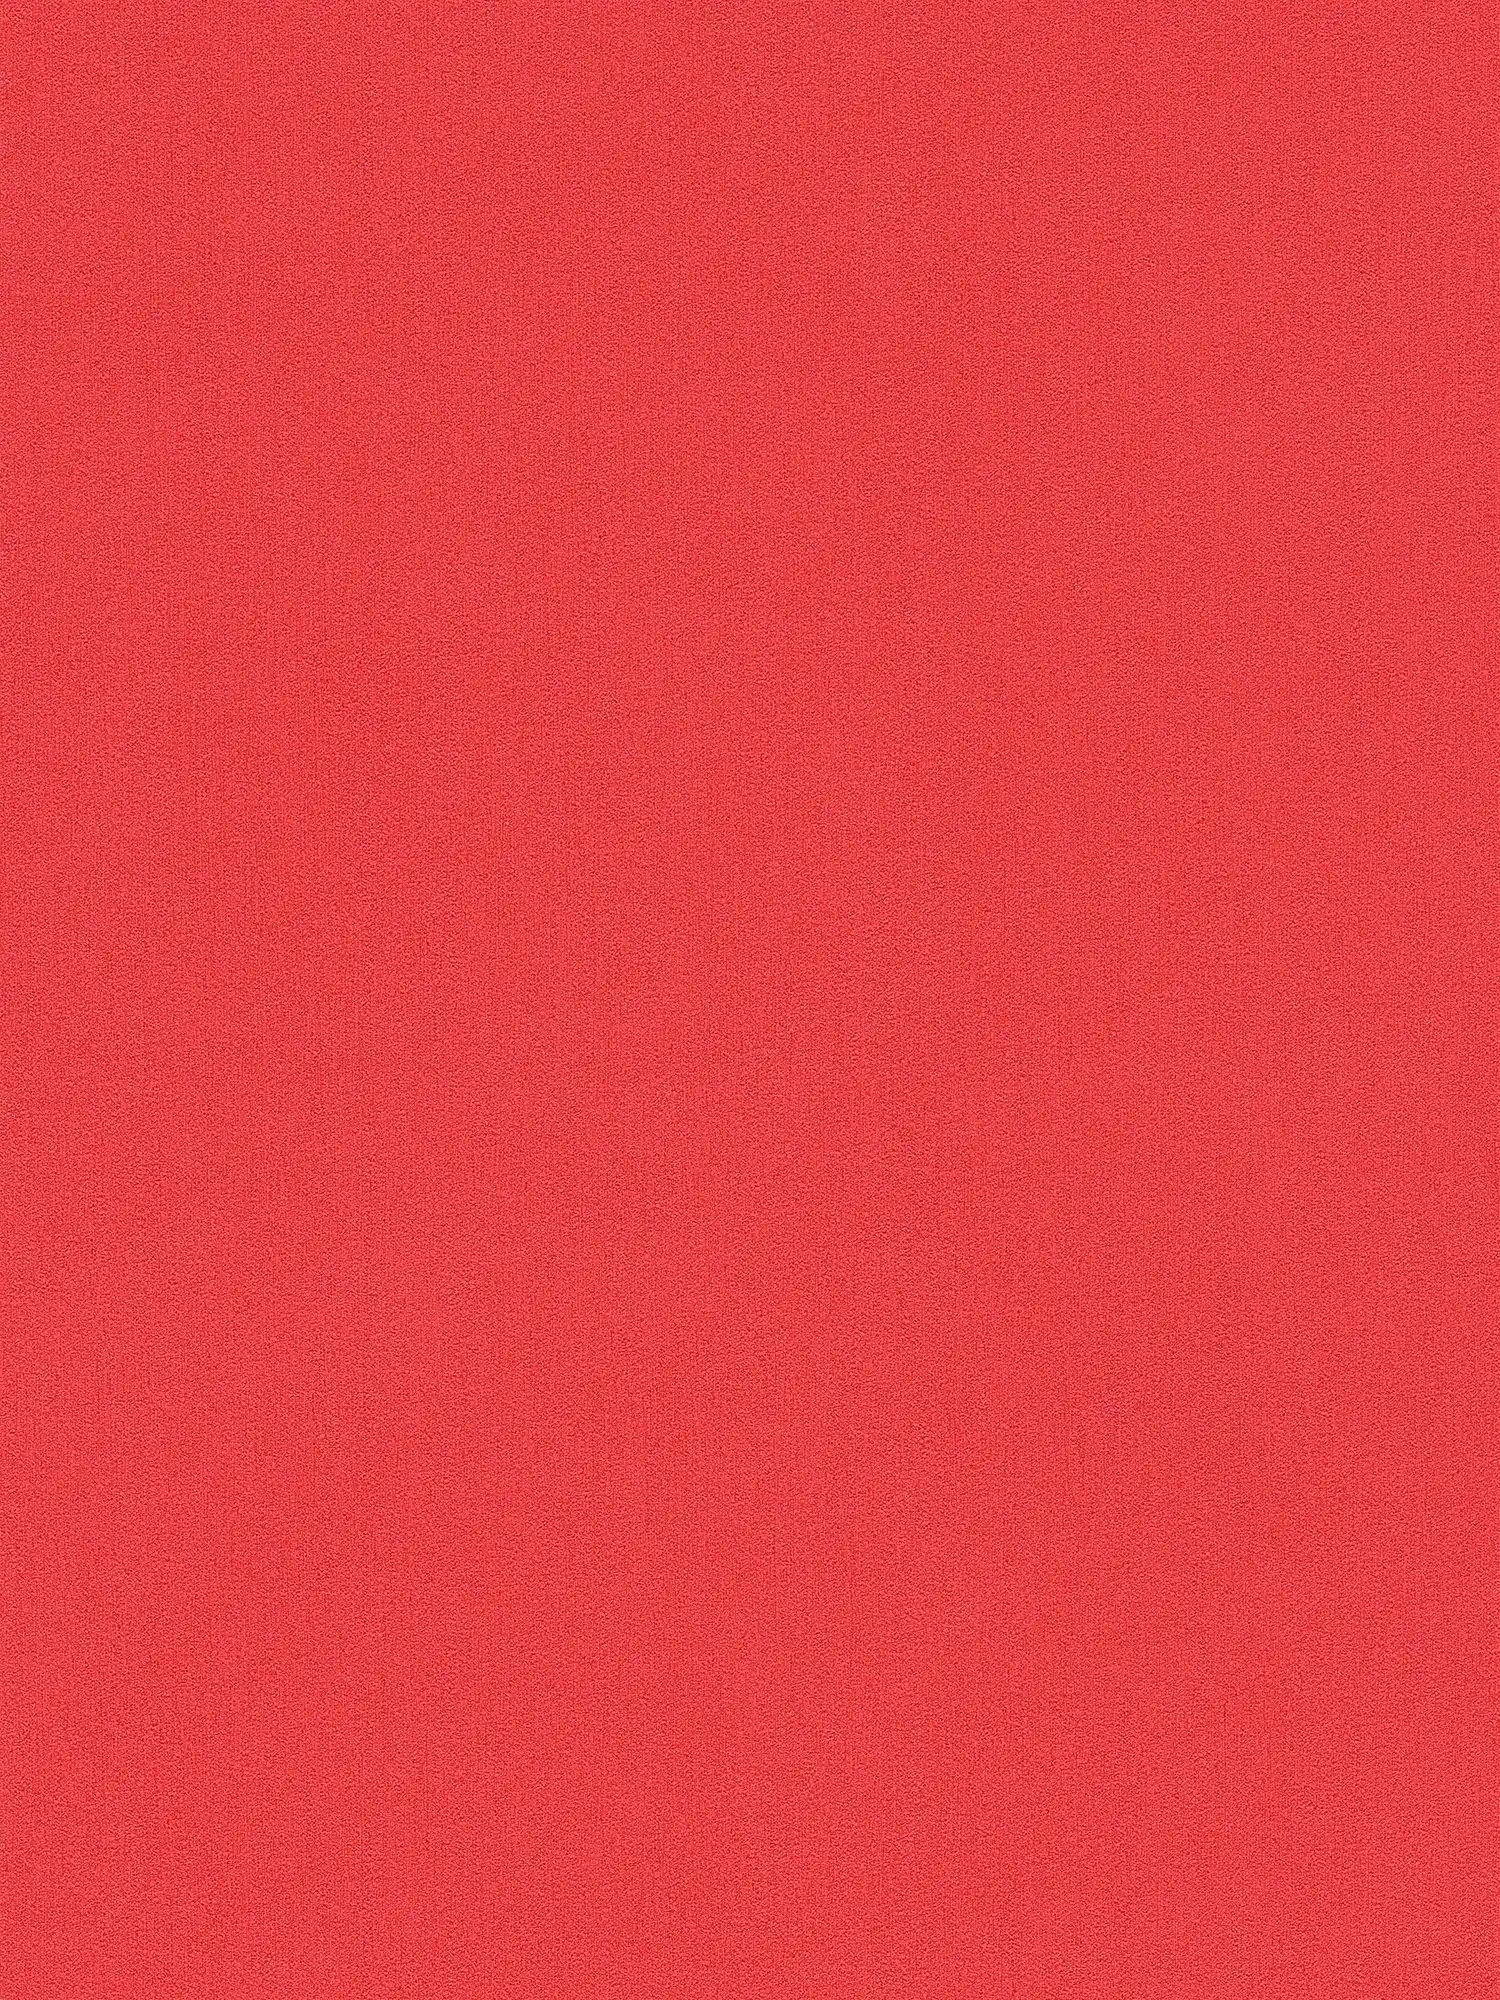 Papel pintado unitario Karl LAGERFELD con estructura en relieve - rojo
